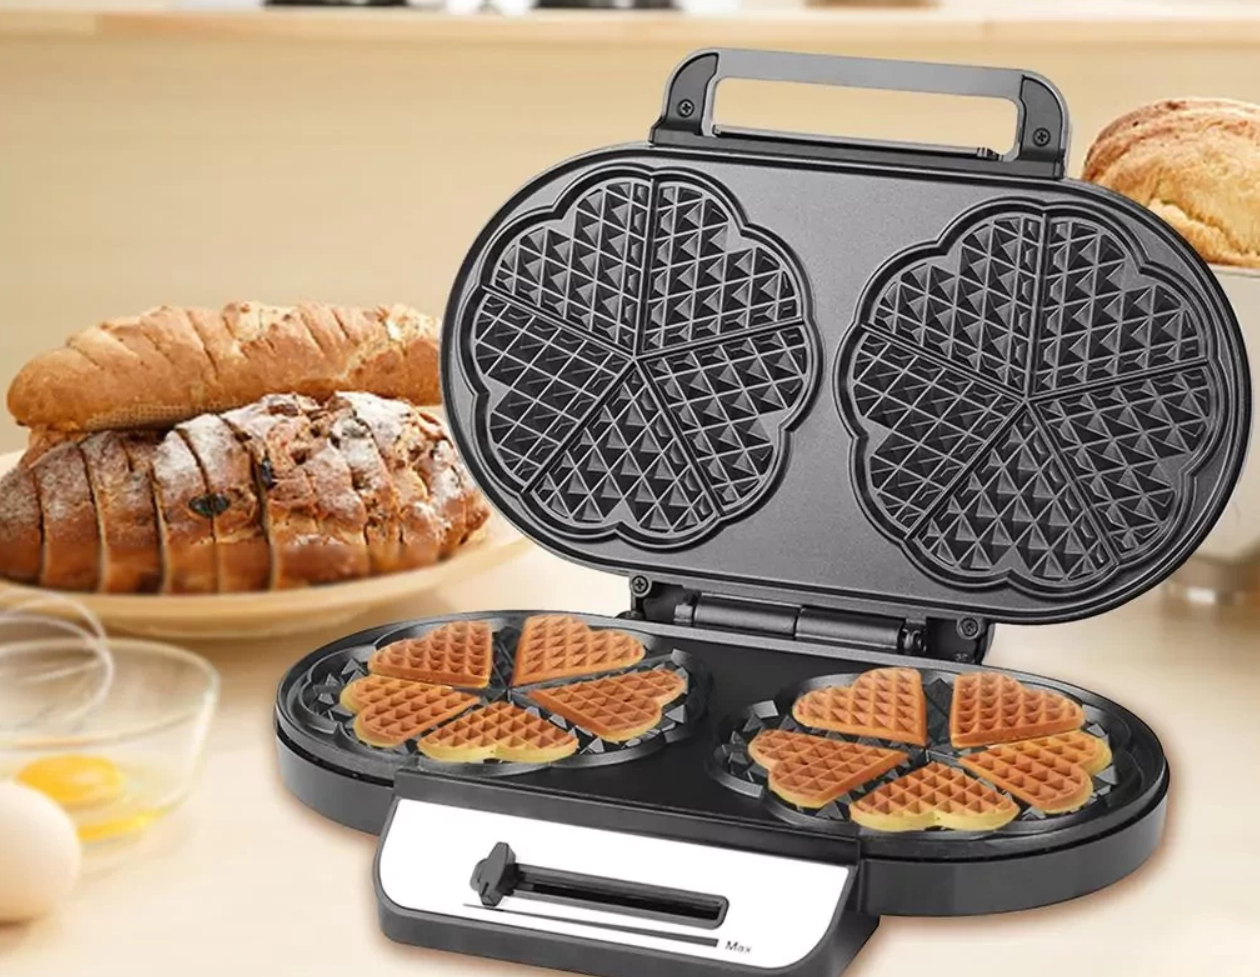 How Do You Use a Double Waffle Maker